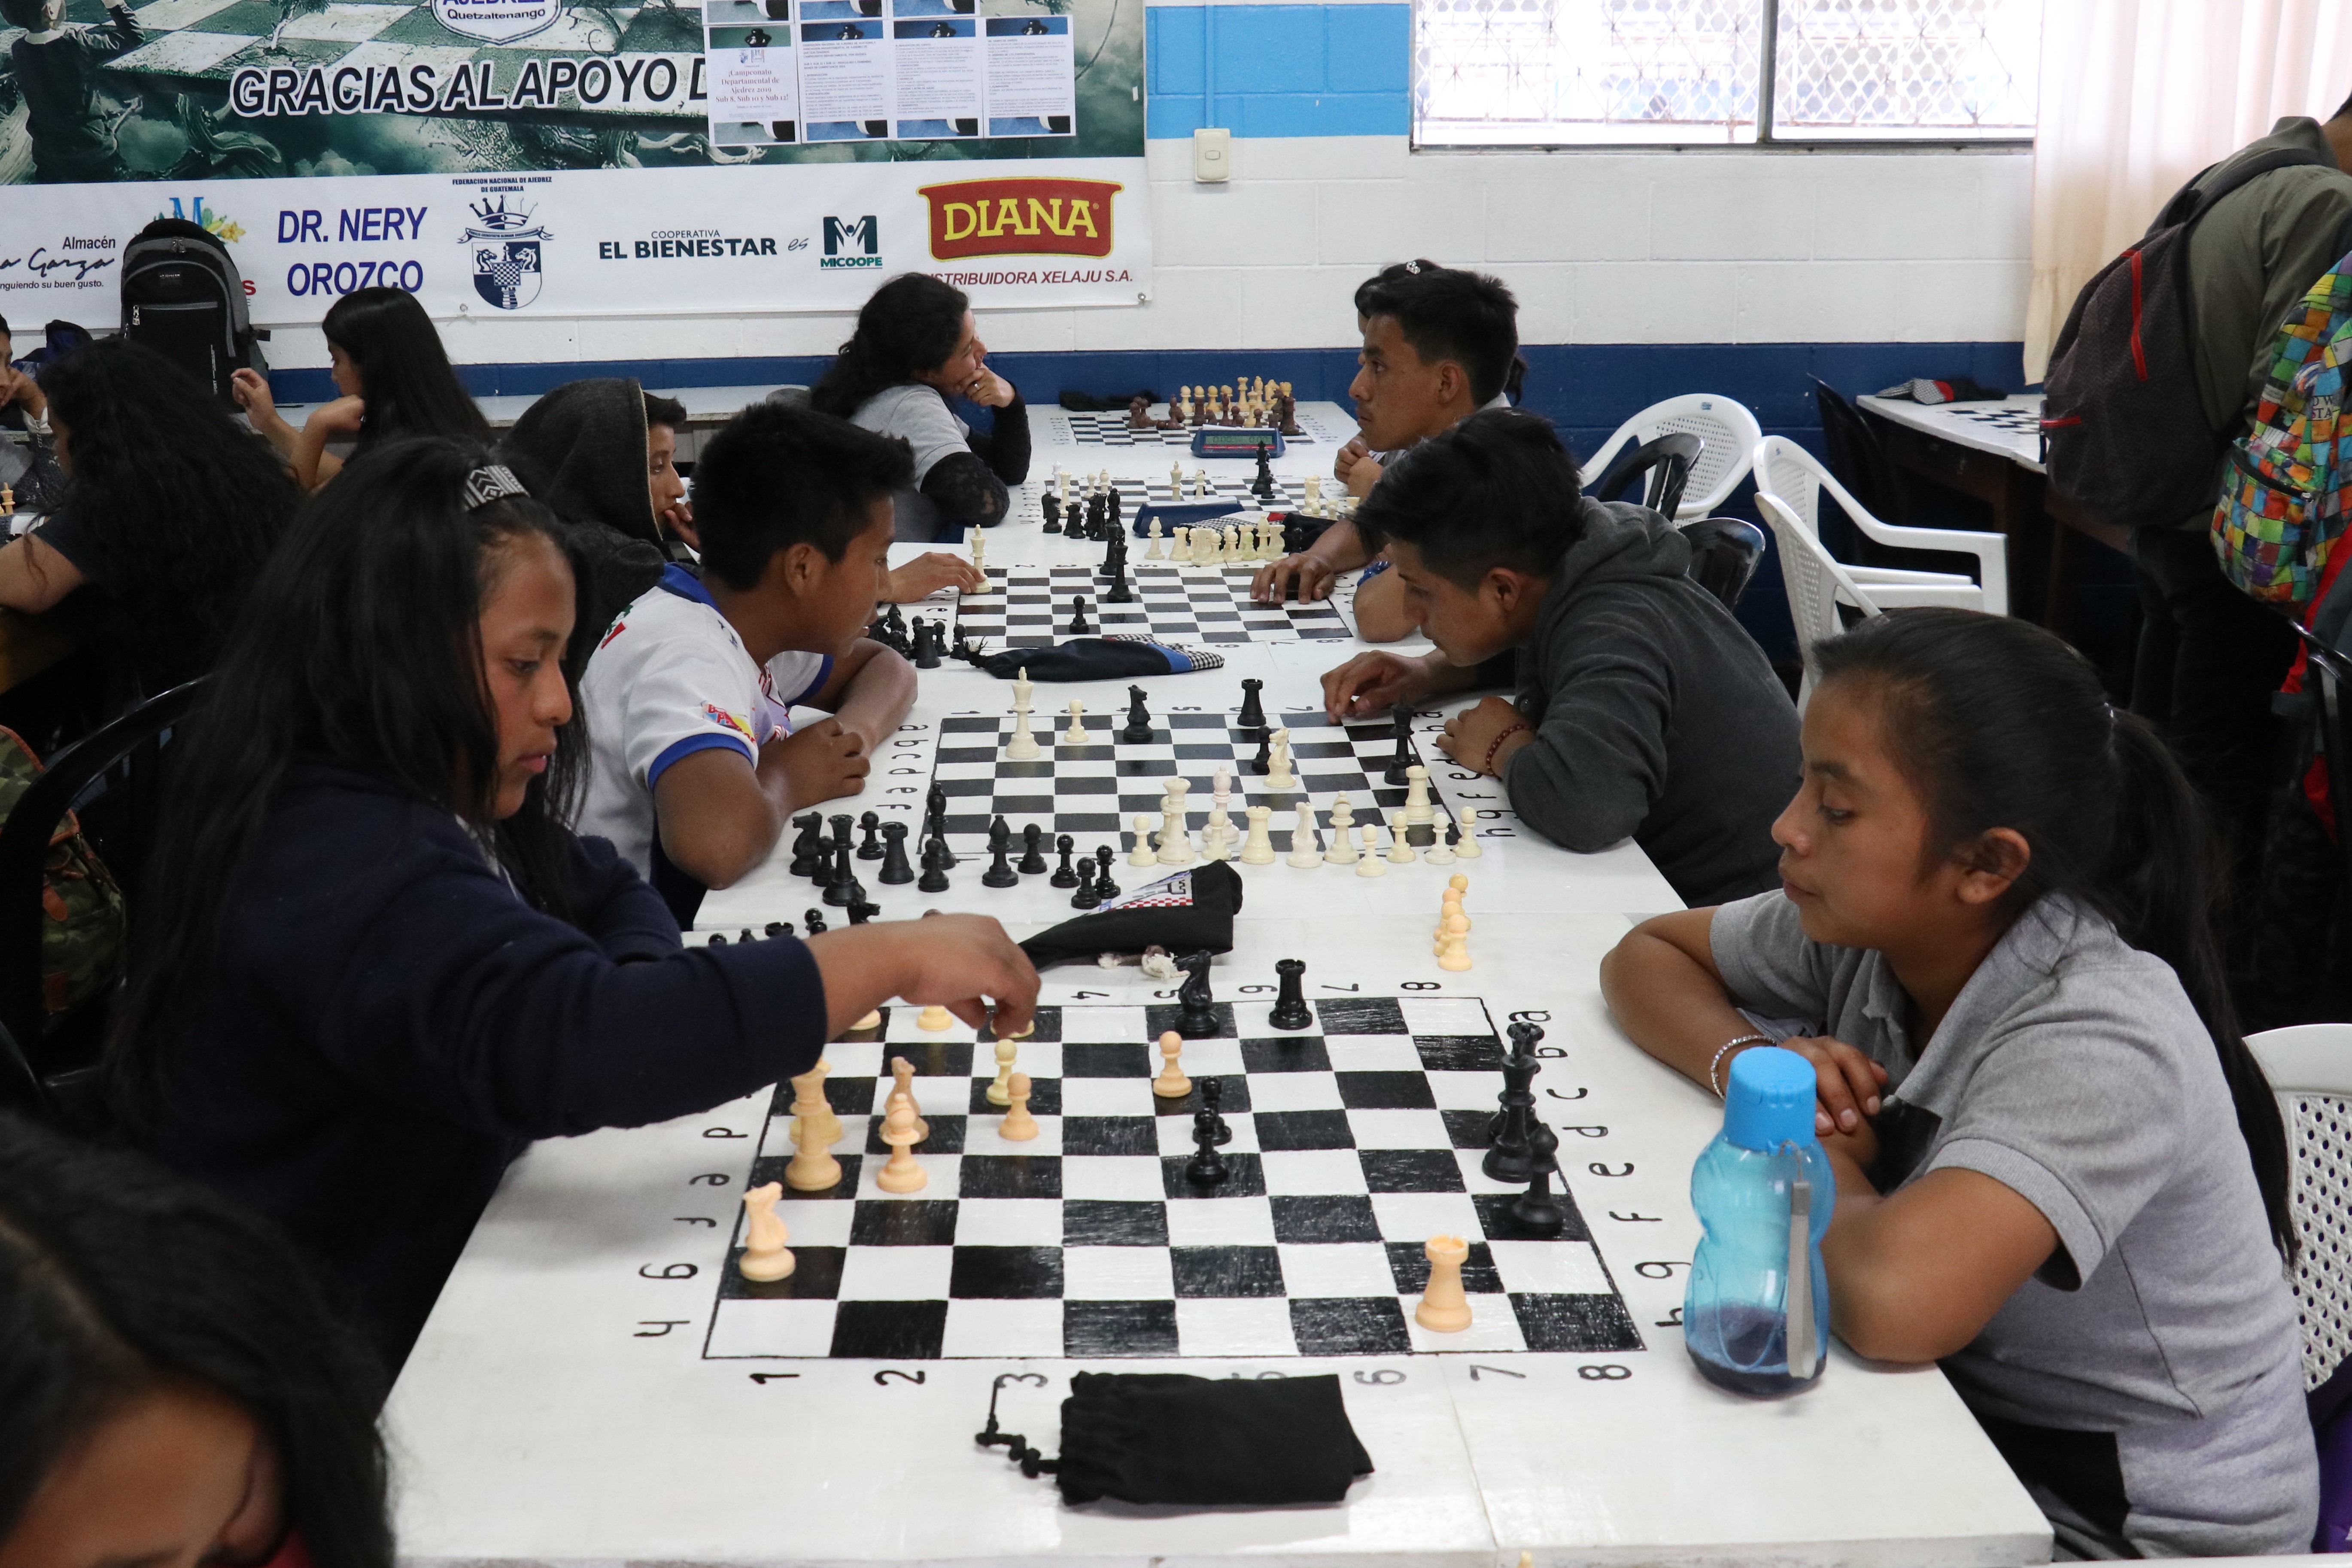 El ajedrez online recolecta fanáticos jóvenes de la ciudad